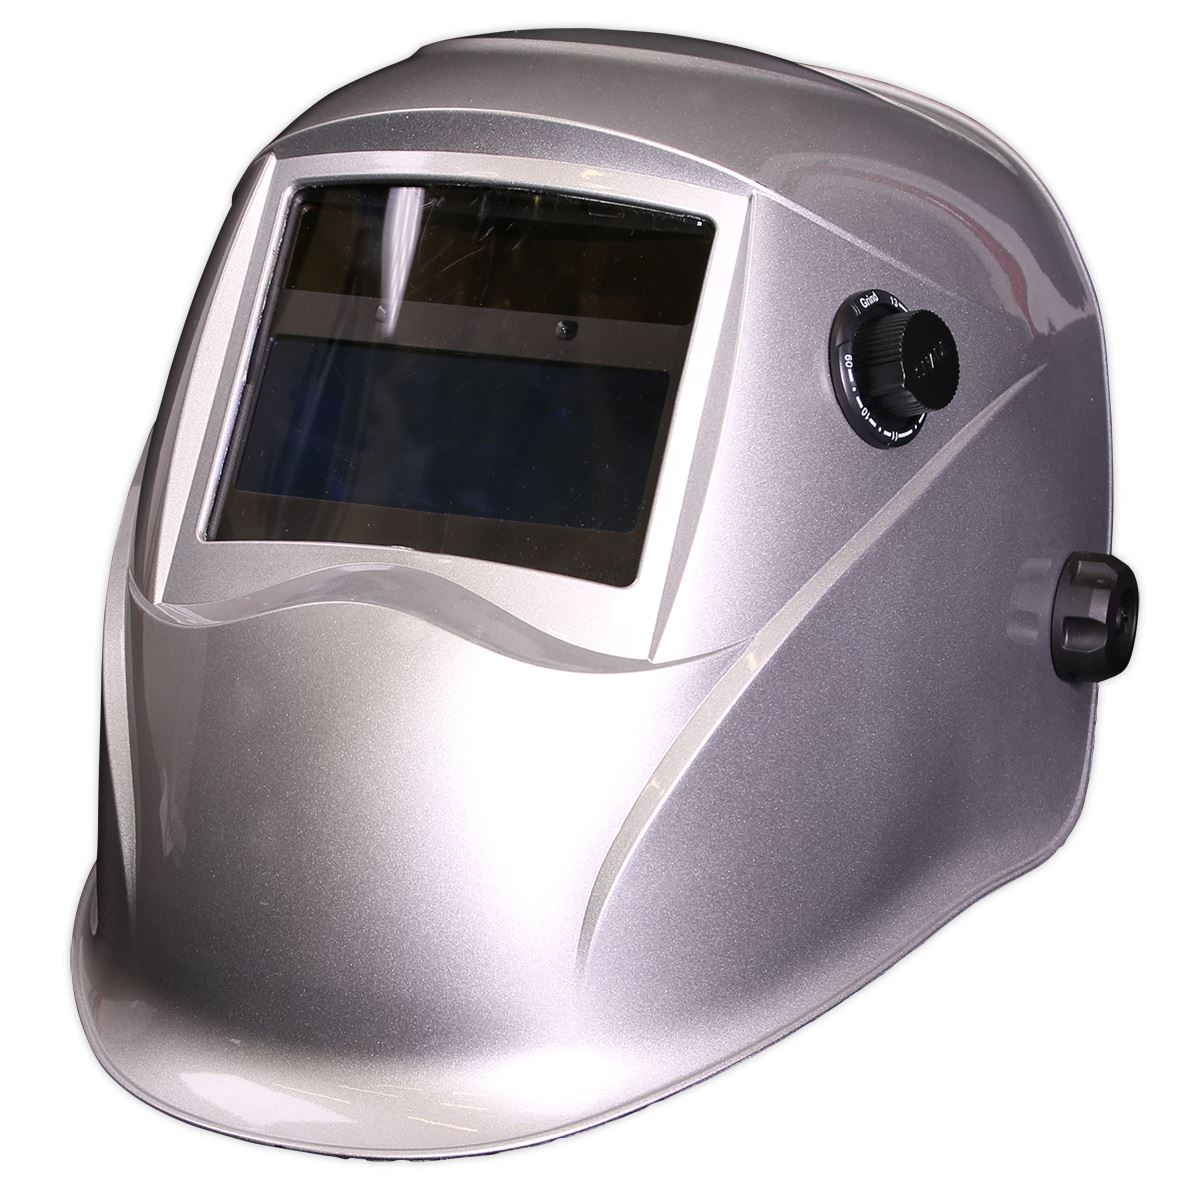 Sealey Welding Helmet Auto Darkening - Shade 9-13 - Silver